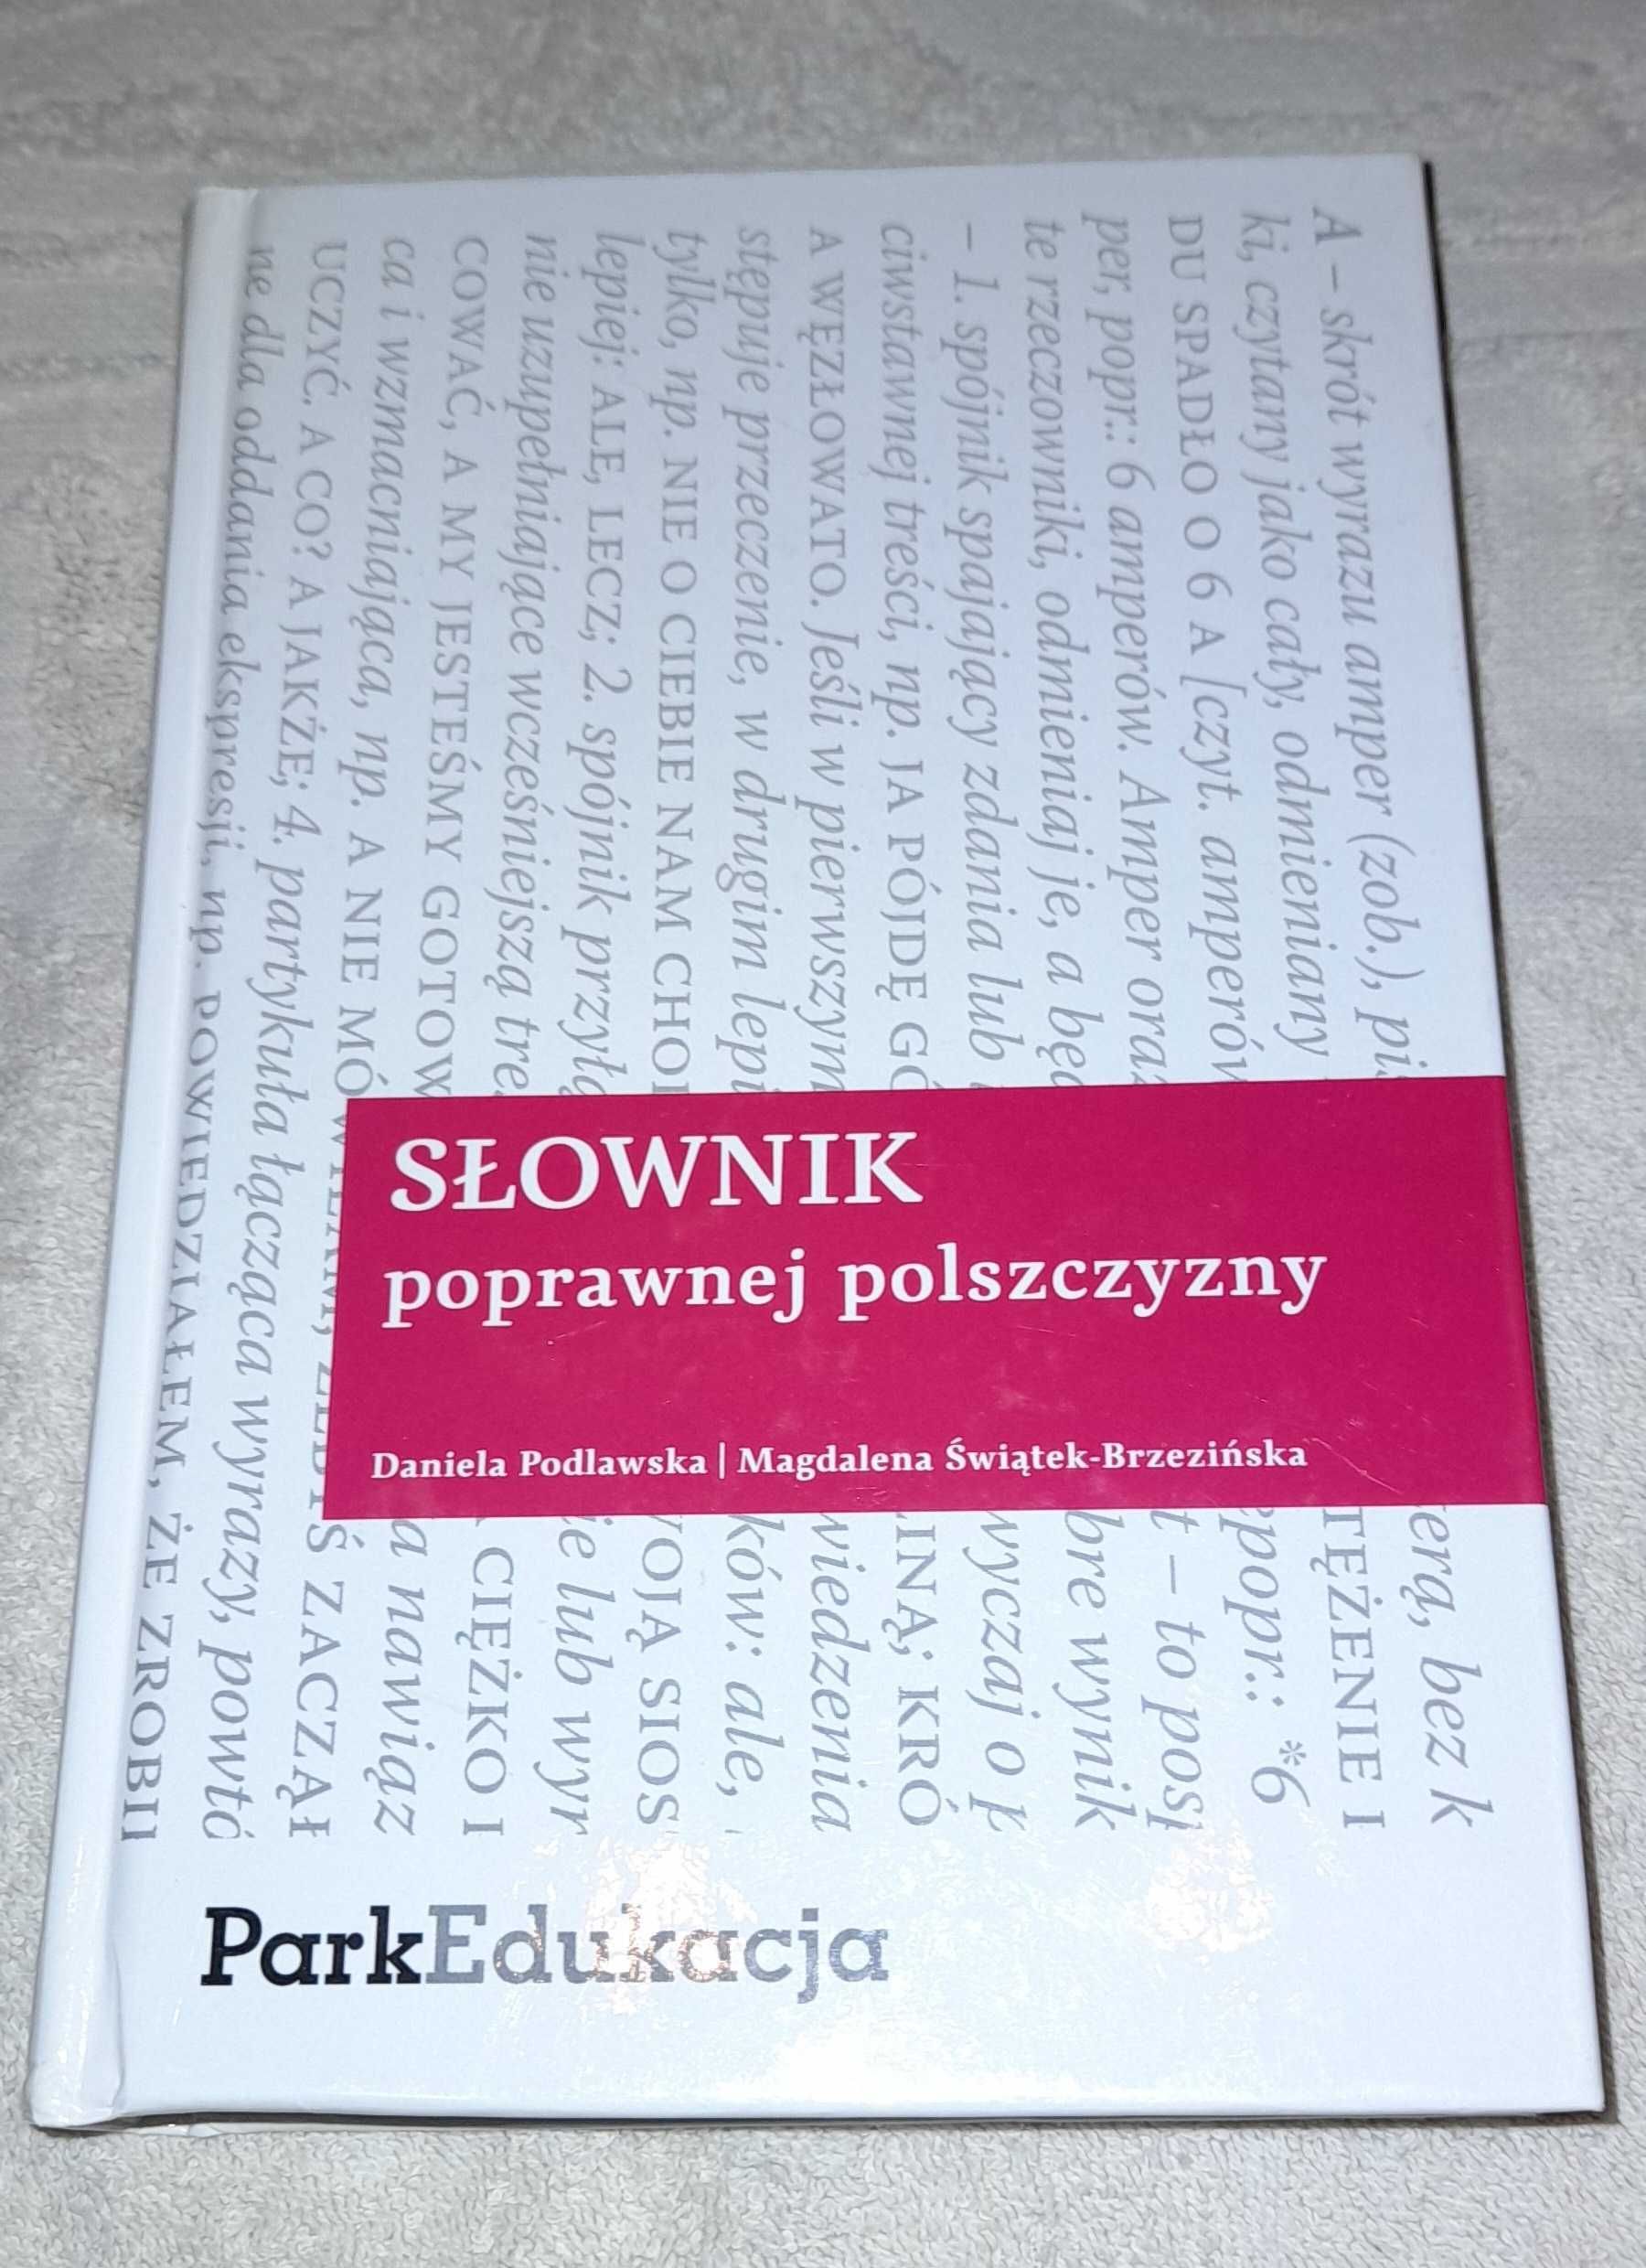 Słownik poprawnej polszczyzny wyd.PWN 2010